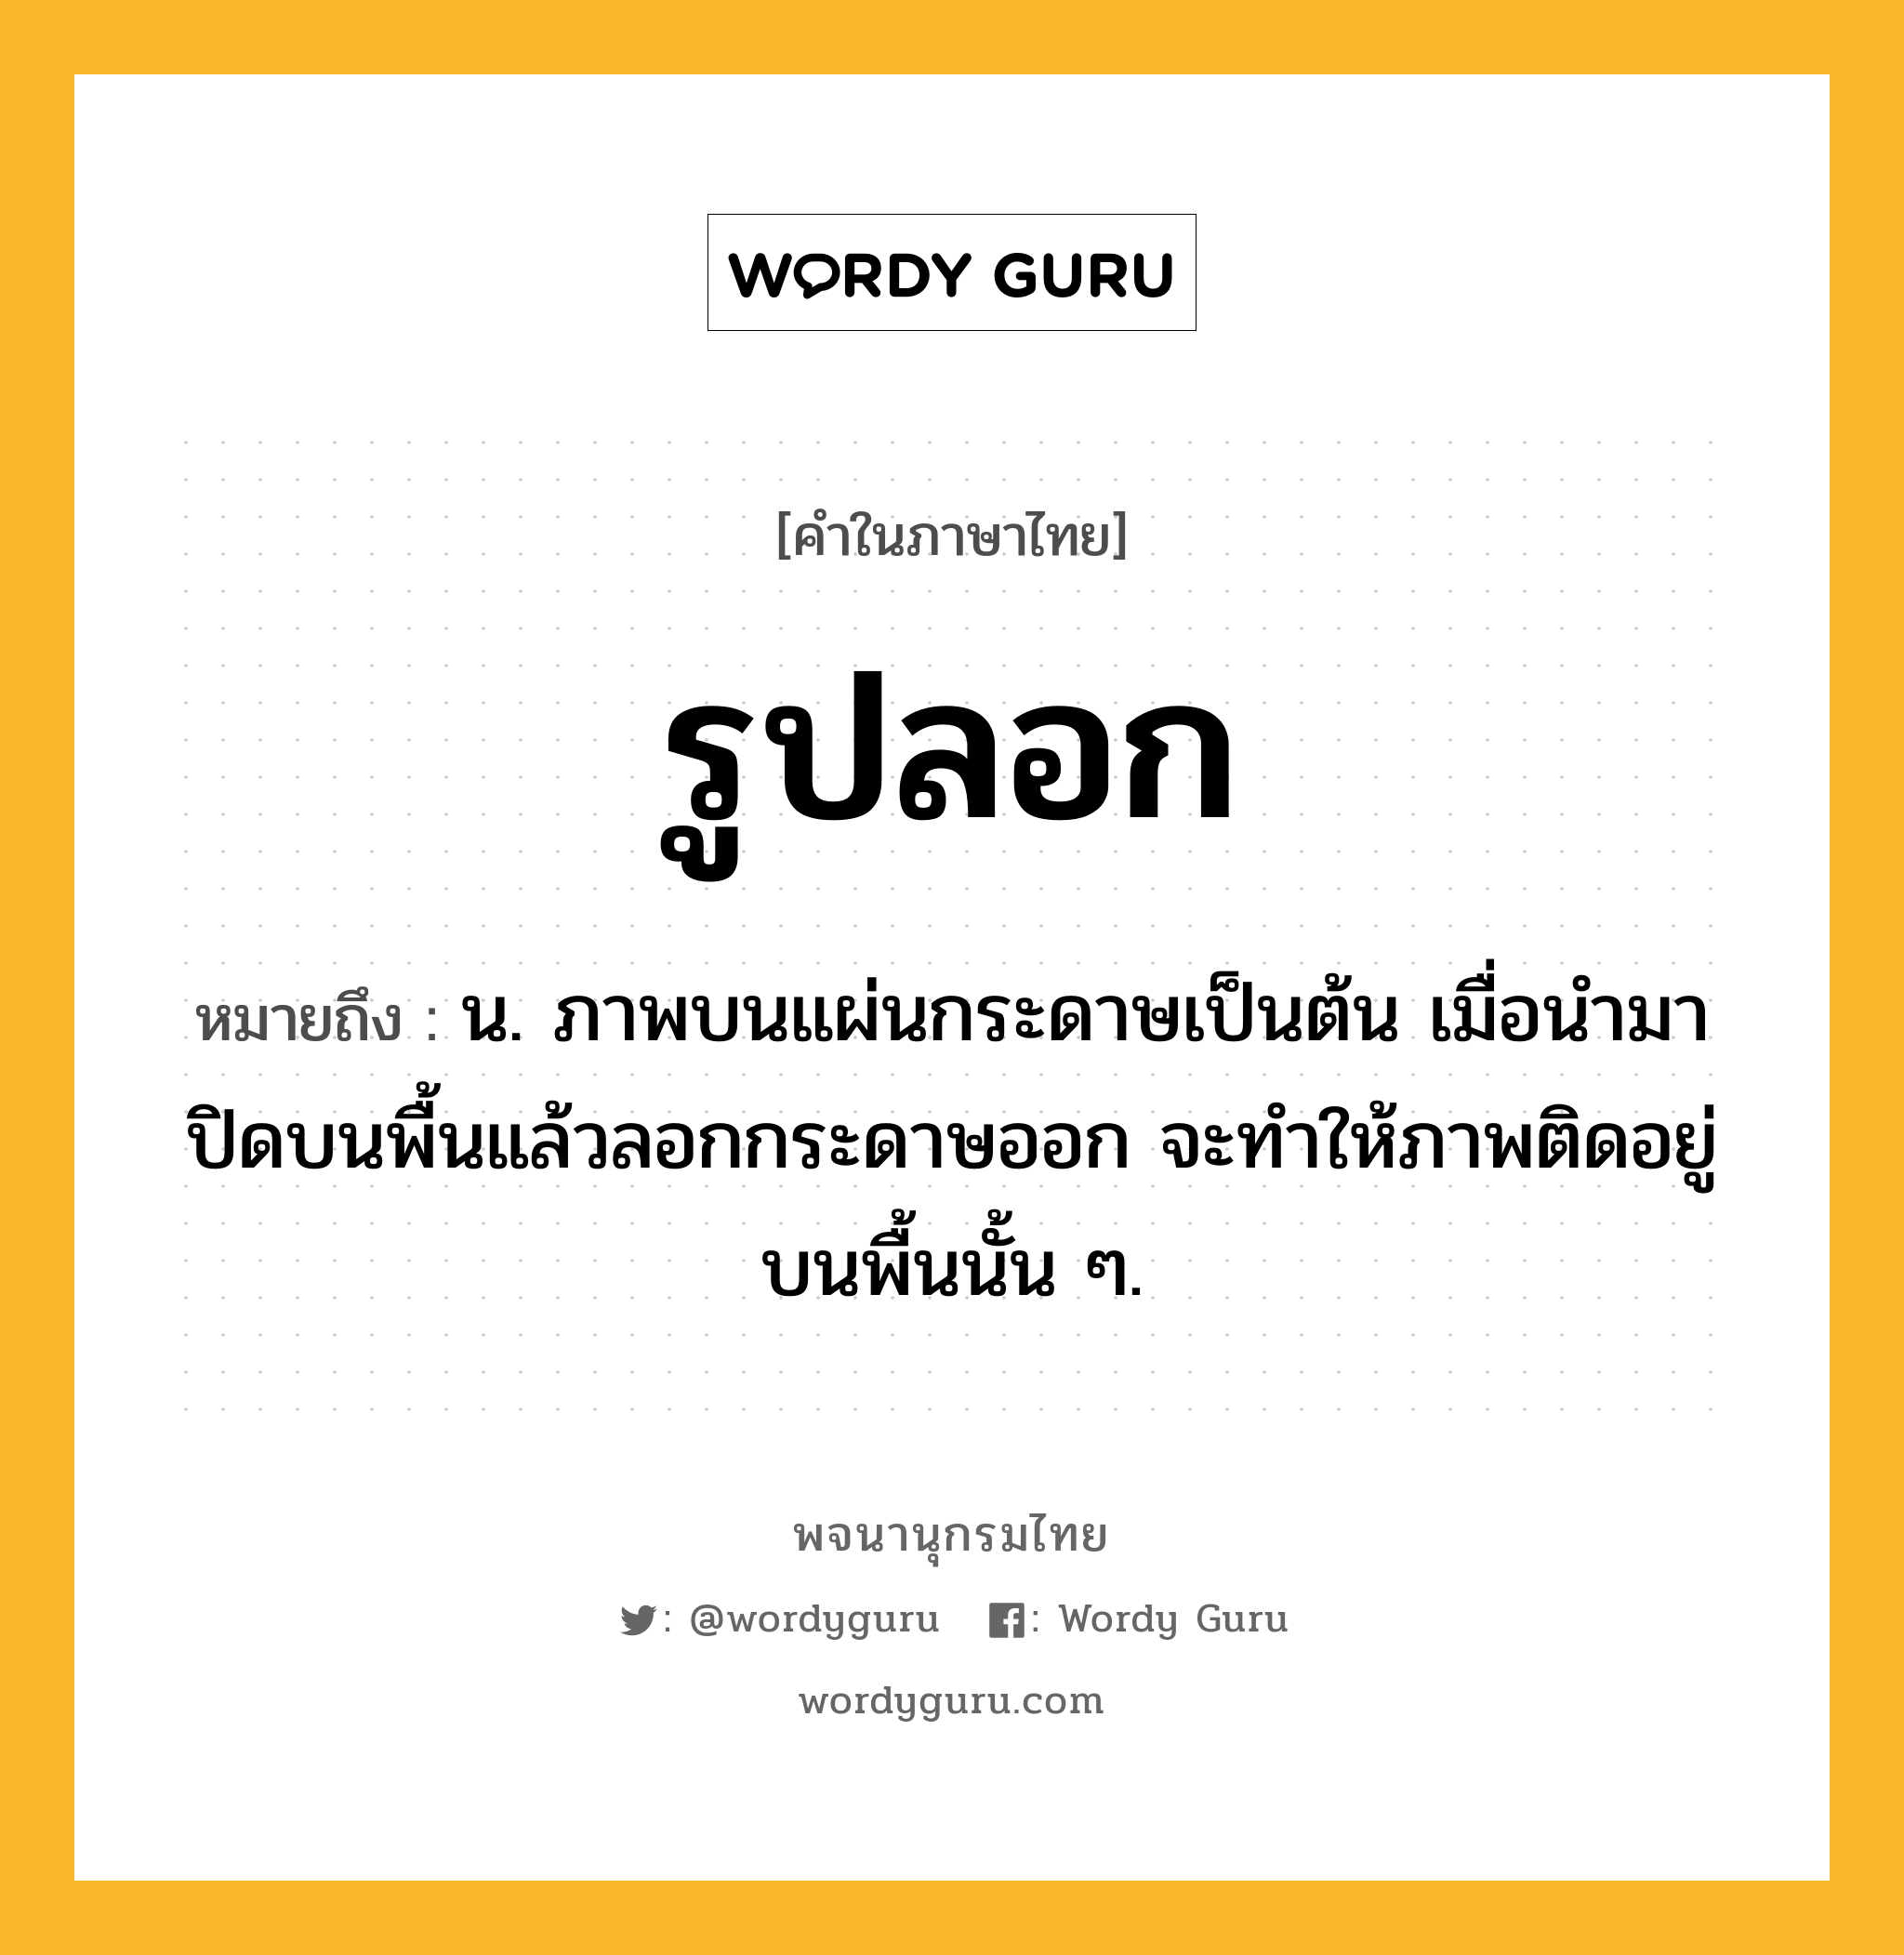 รูปลอก ความหมาย หมายถึงอะไร?, คำในภาษาไทย รูปลอก หมายถึง น. ภาพบนแผ่นกระดาษเป็นต้น เมื่อนํามาปิดบนพื้นแล้วลอกกระดาษออก จะทําให้ภาพติดอยู่บนพื้นนั้น ๆ.